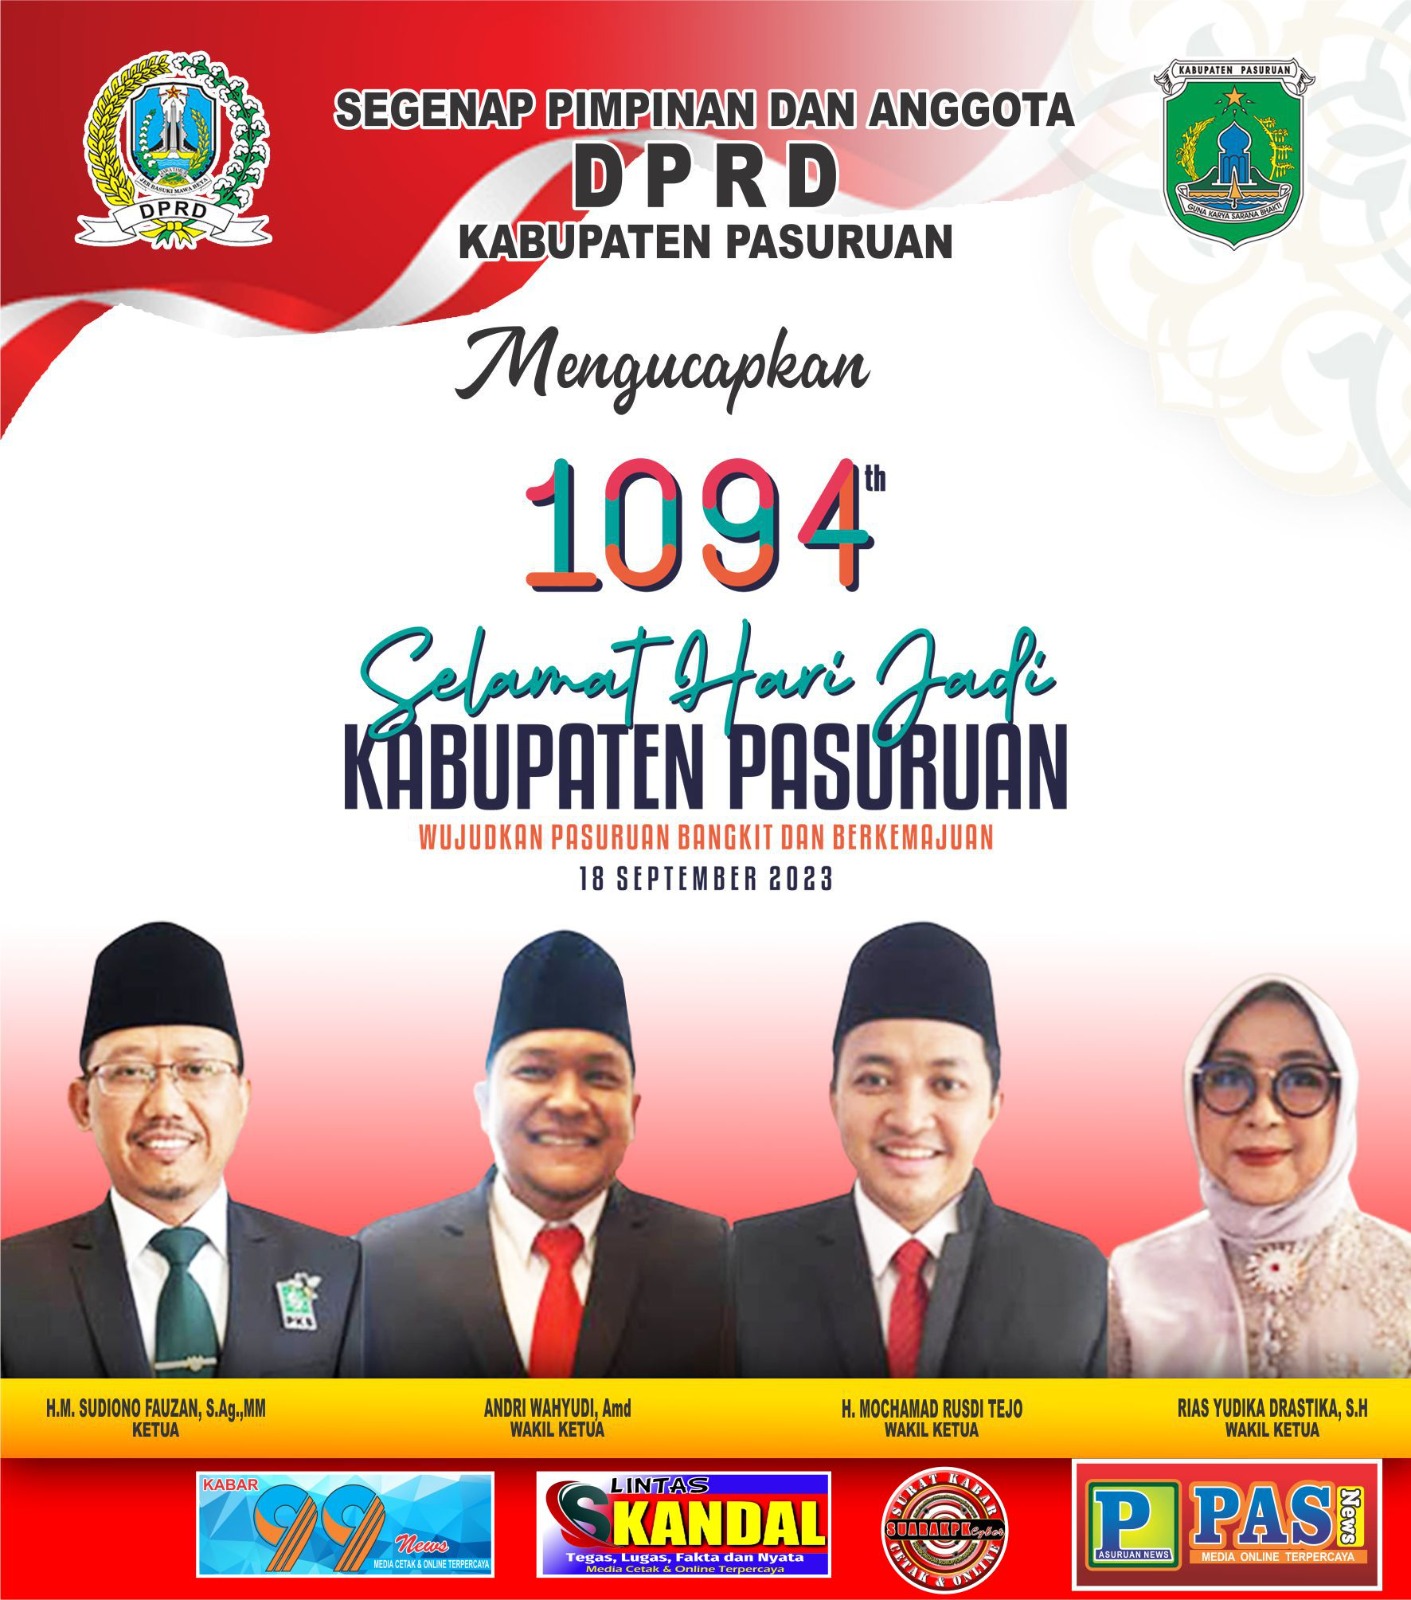 Segenap Pimpinan Dan Anggota DPRD Kabupaten Pasuruan Mengucapkan Selamat Hari Jadi Kabupaten Pasuruan ke-1094 18 September 2023